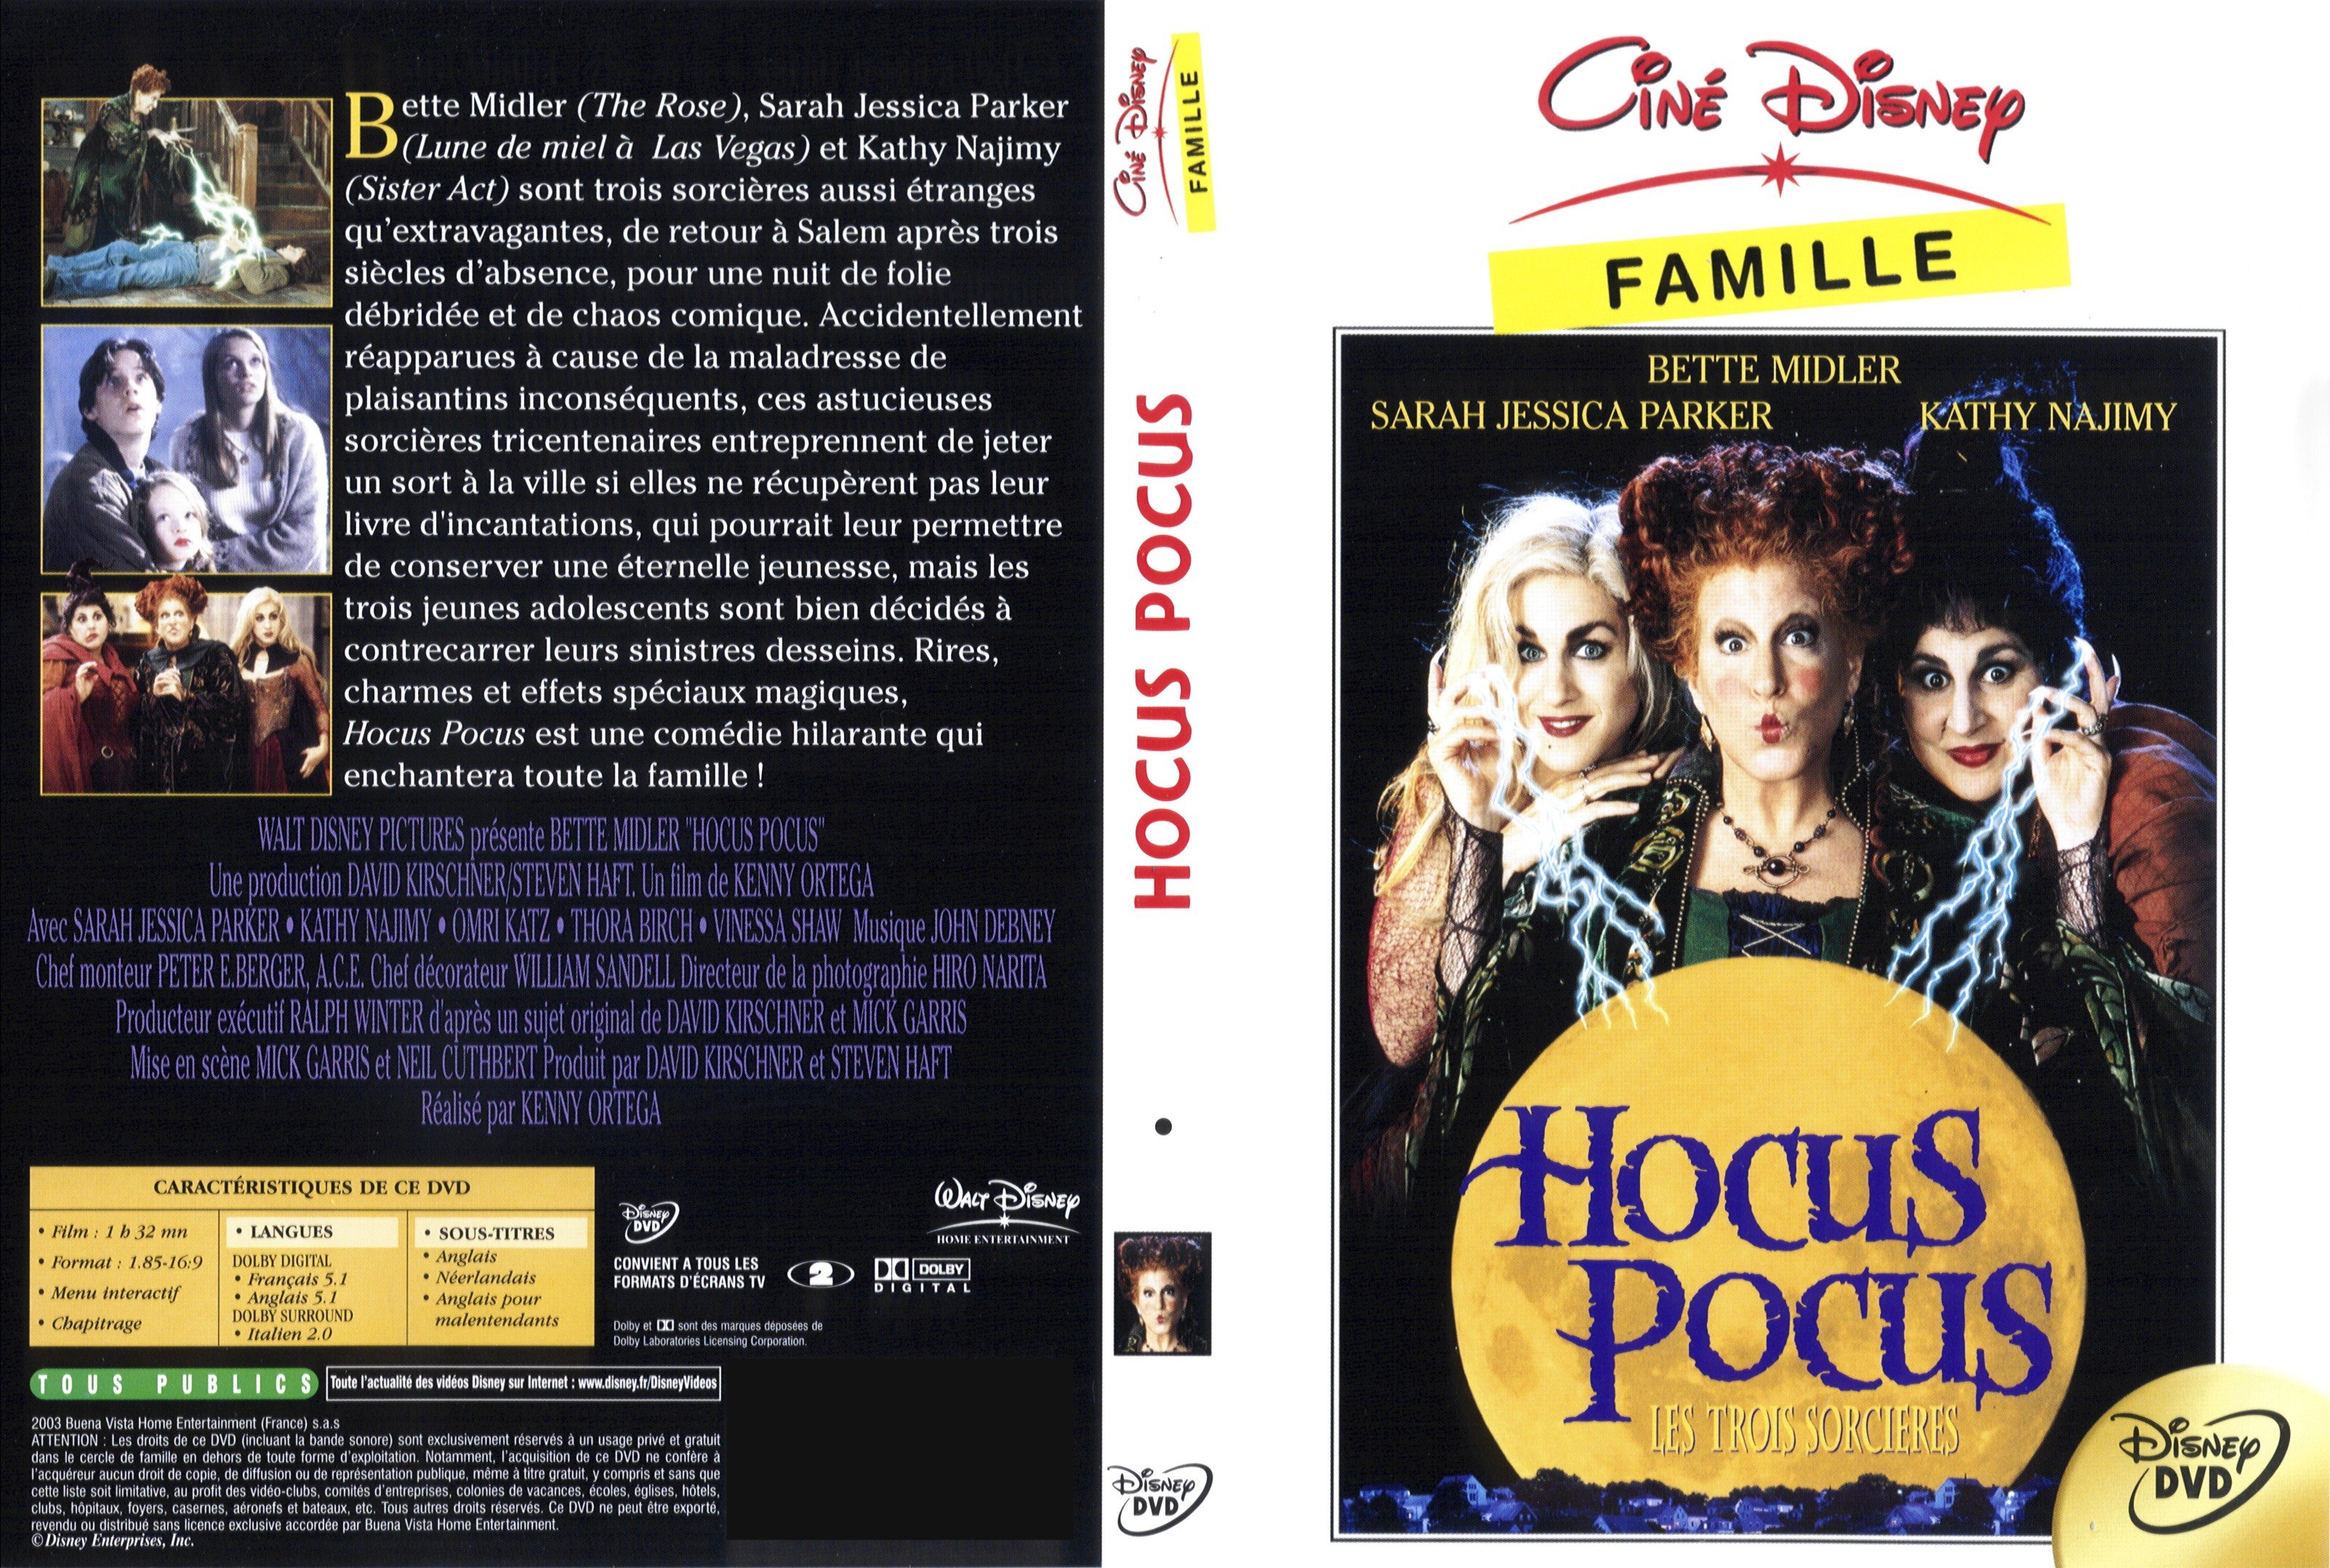 Jaquette DVD Hocus Pocus v2